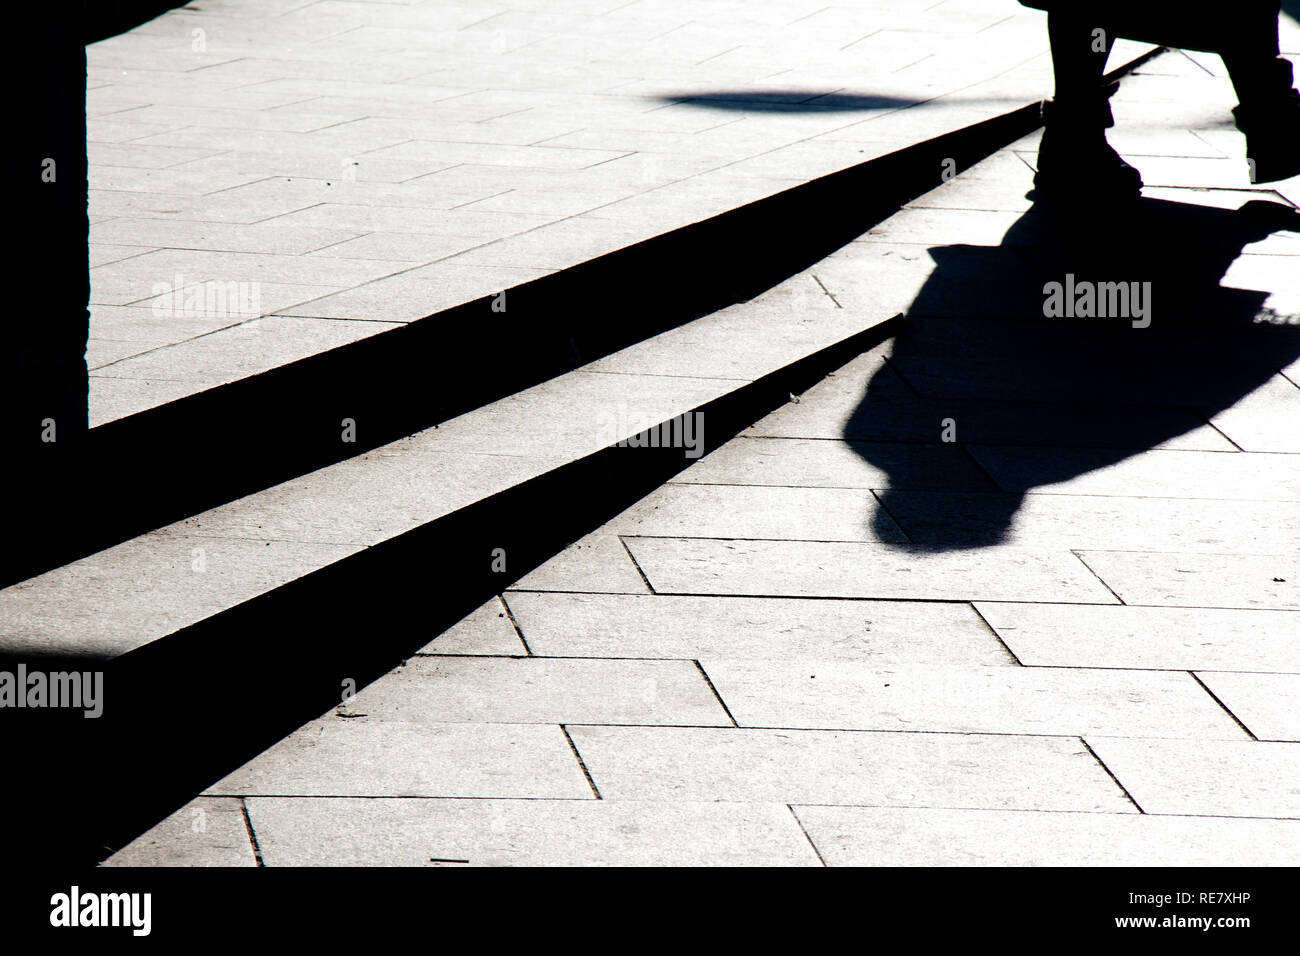 Unscharfe silhouette Schatten von einer Person zu Fuß auf eine Stadt Bürgersteig im Winter in Schwarz und Weiß mit hohem Kontrast Stockfoto